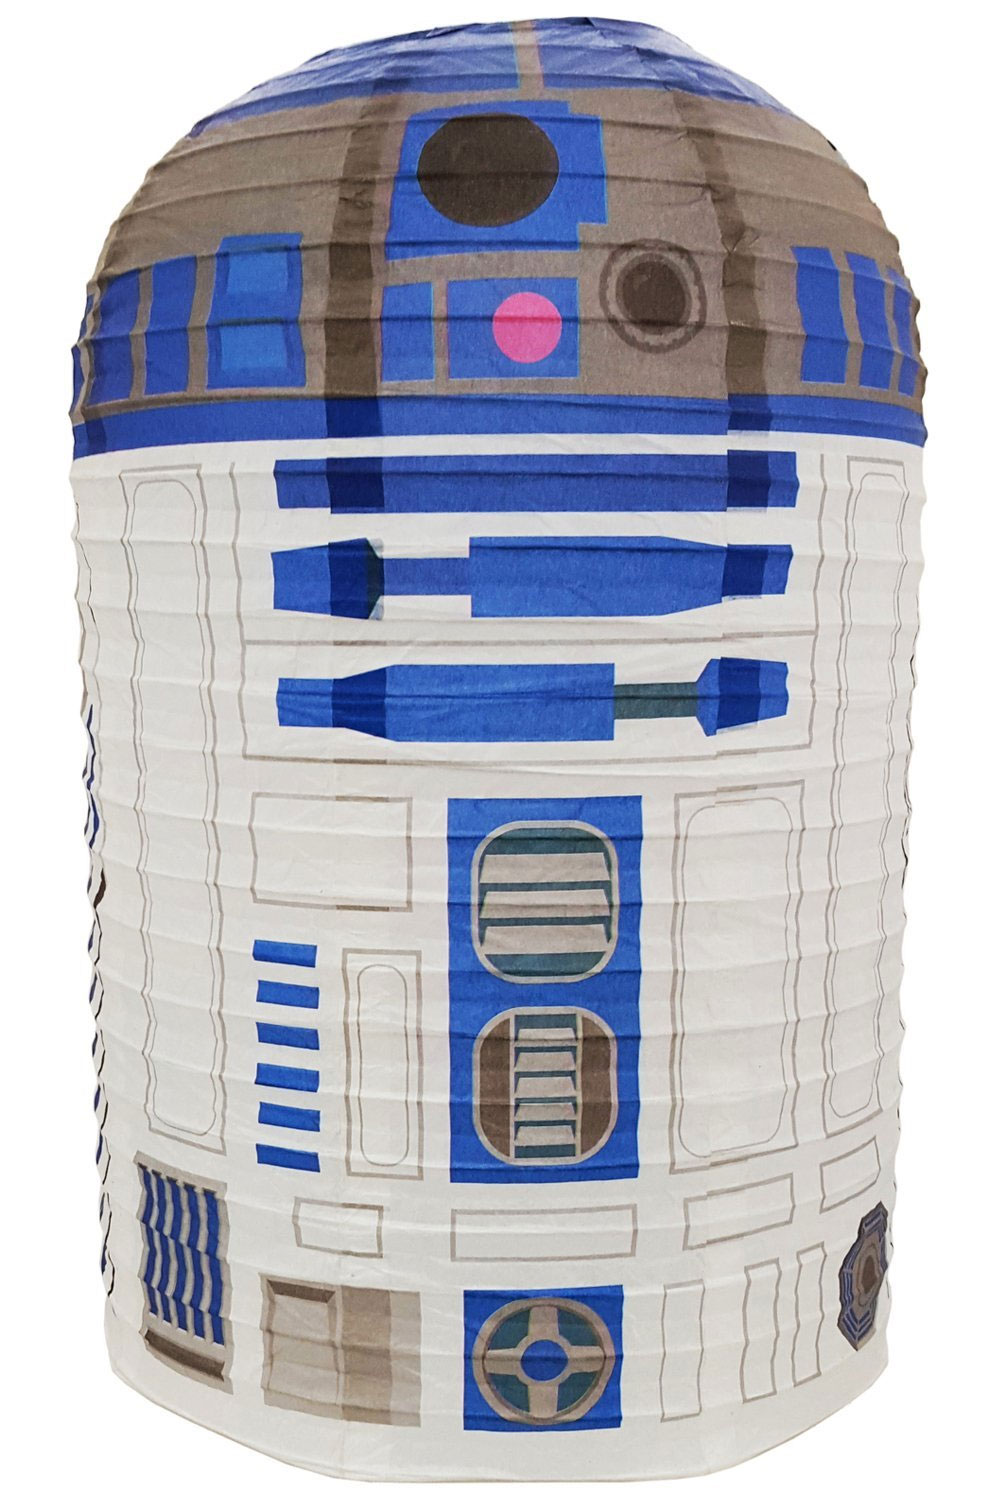 Star Wars Lanterne Boule en Papier R2-D2 40 cm